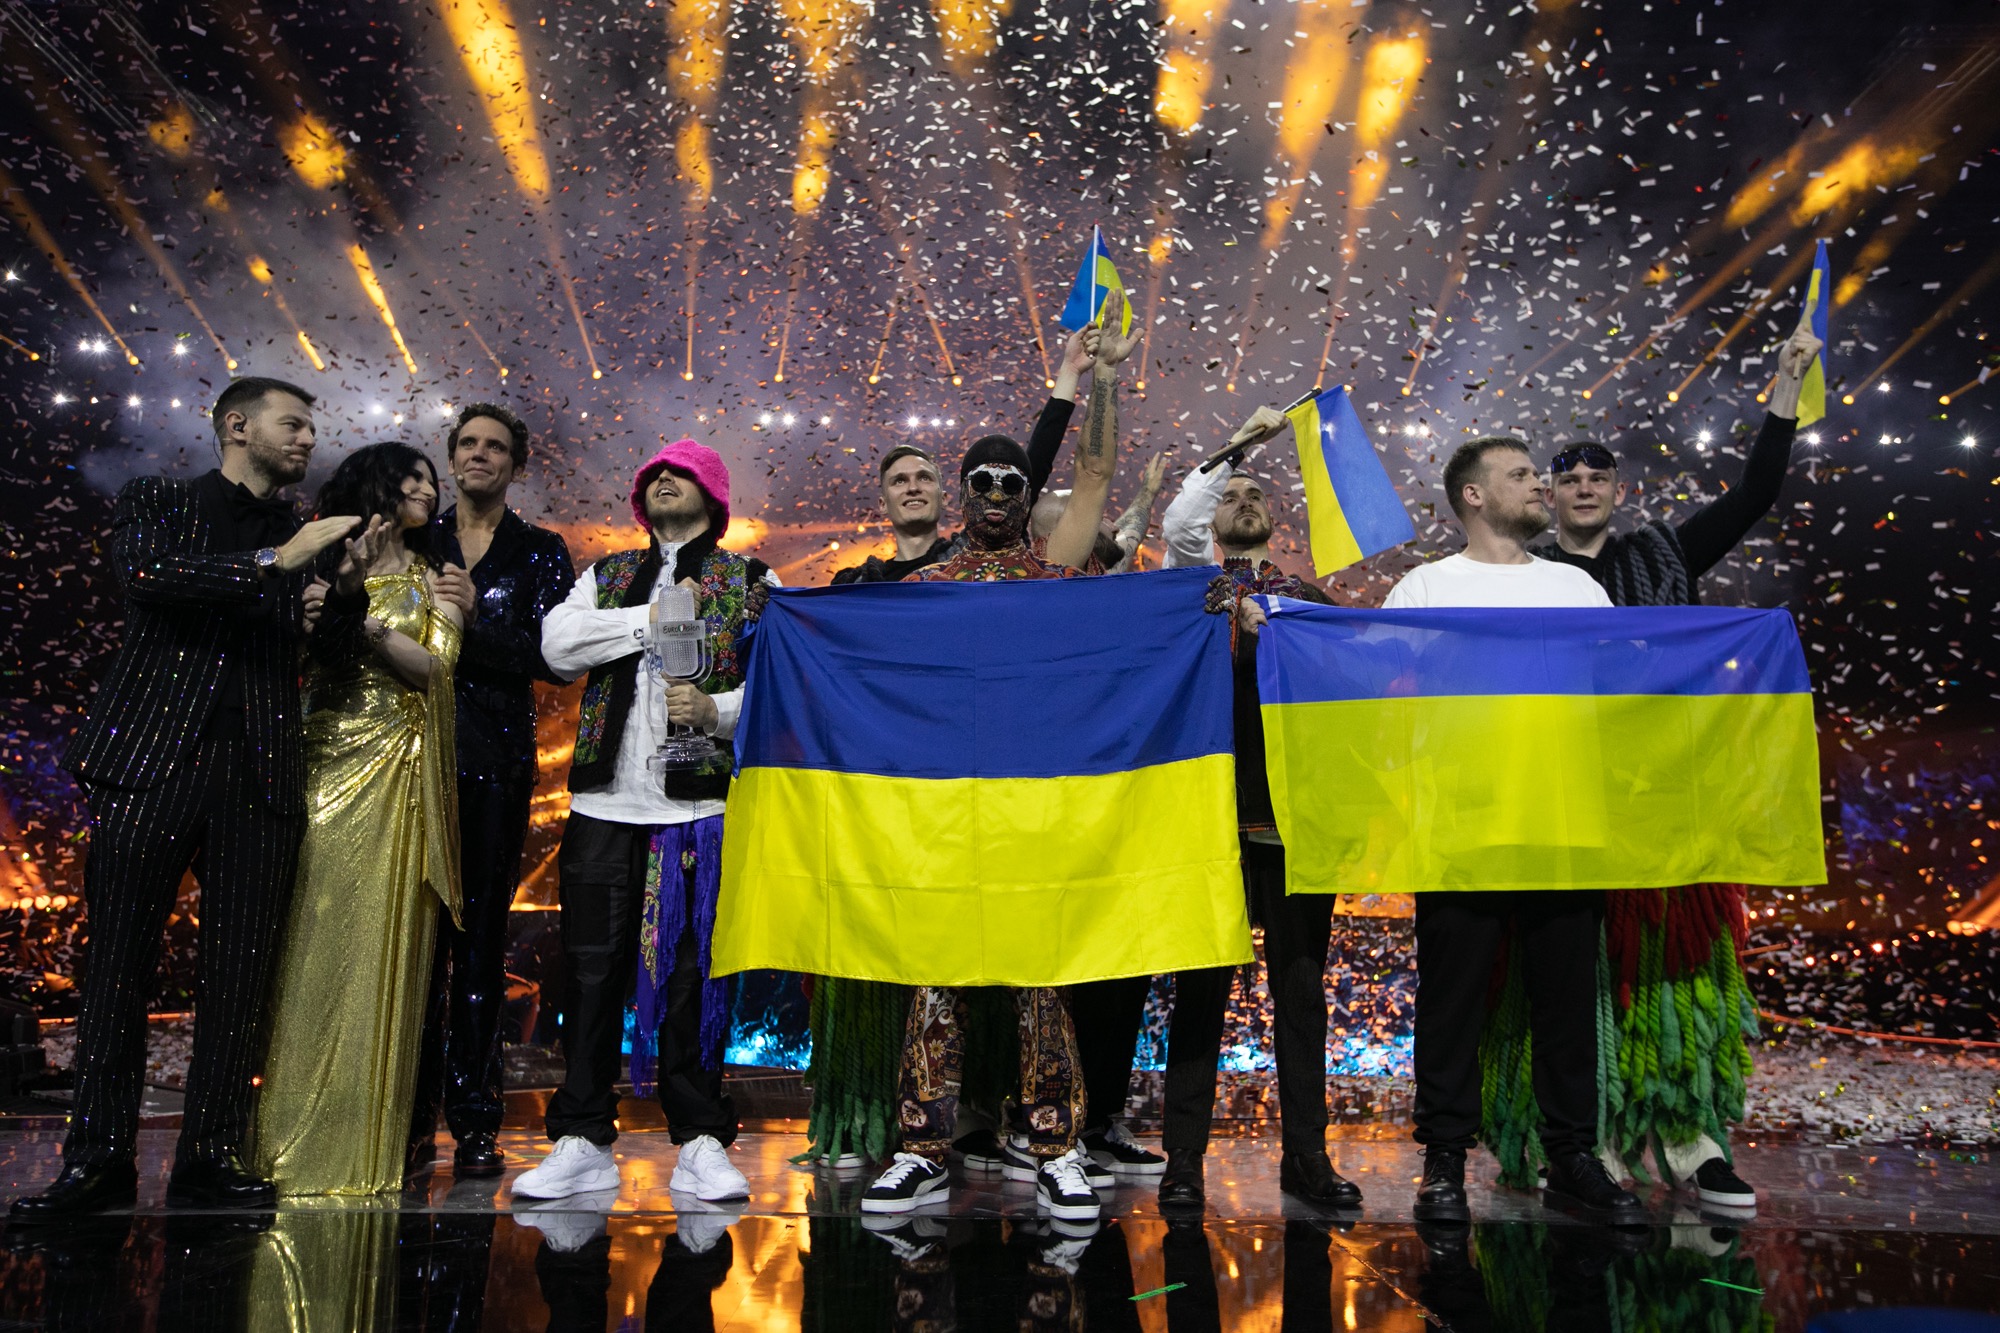 L'Ucraina si aggiudica l'Eurovision Song Contest 2022: ecco la classifica finale thumbnail